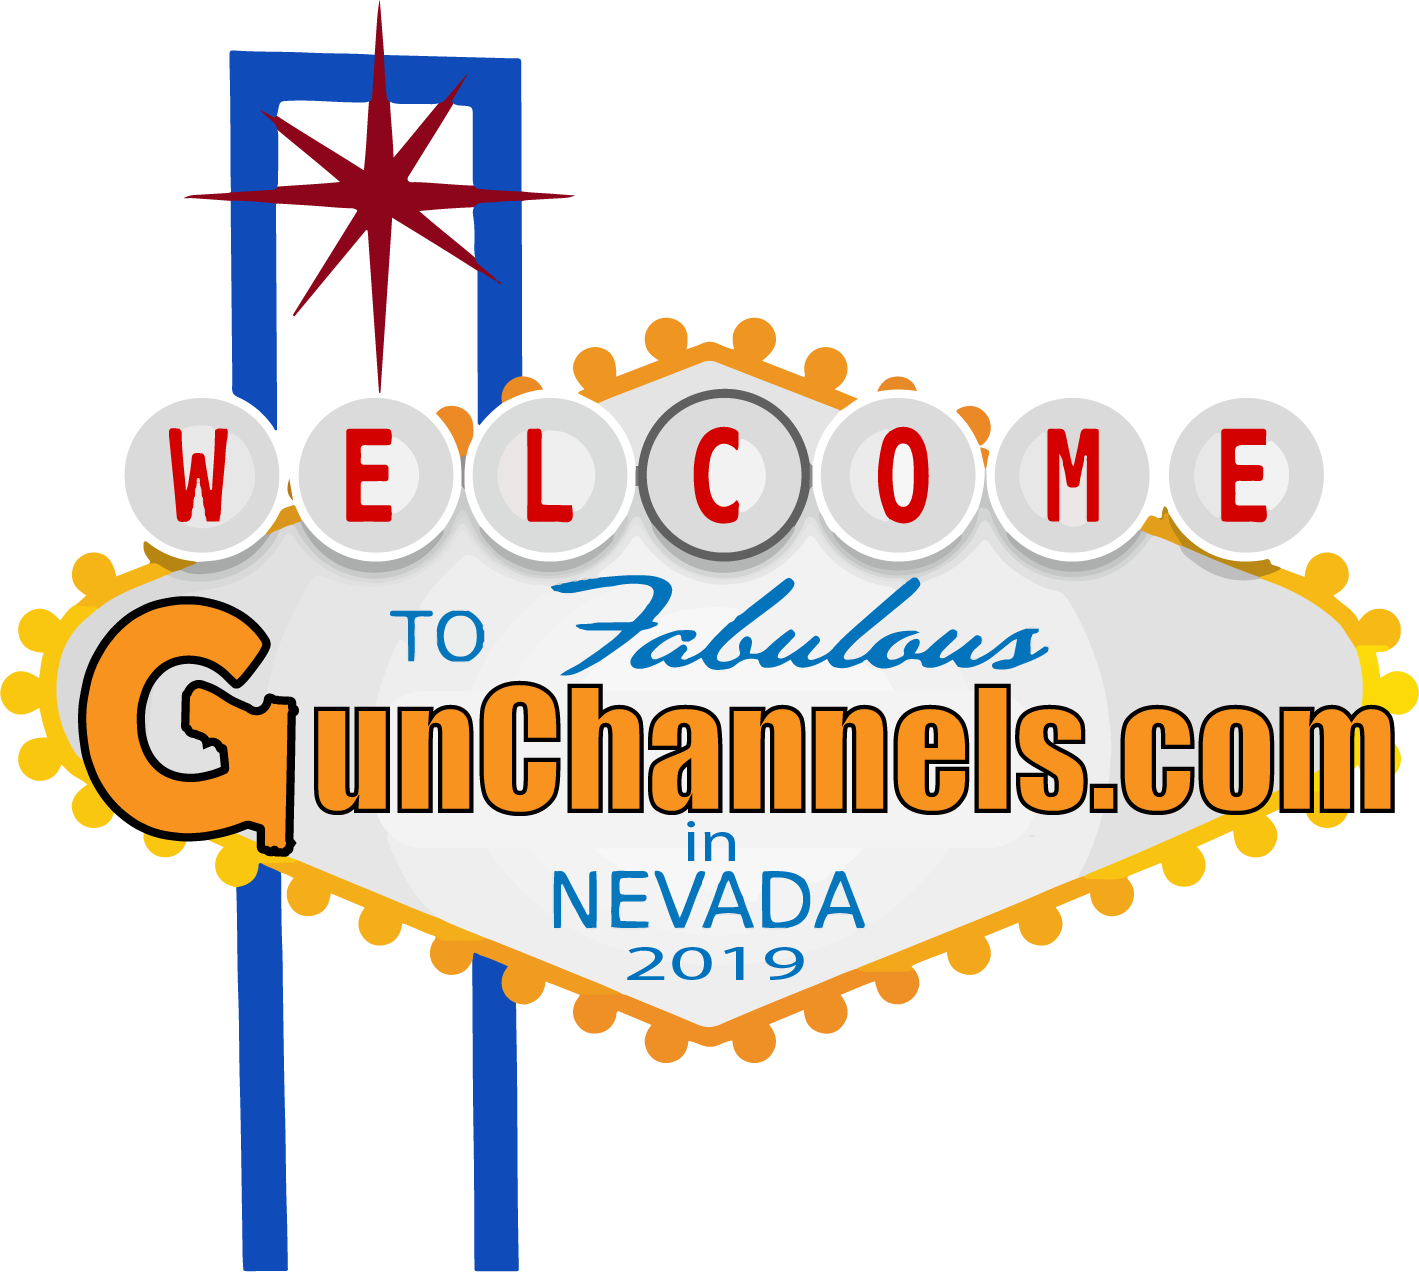 6th Gen - Gun Channels in Vegas - Trading Card Sets